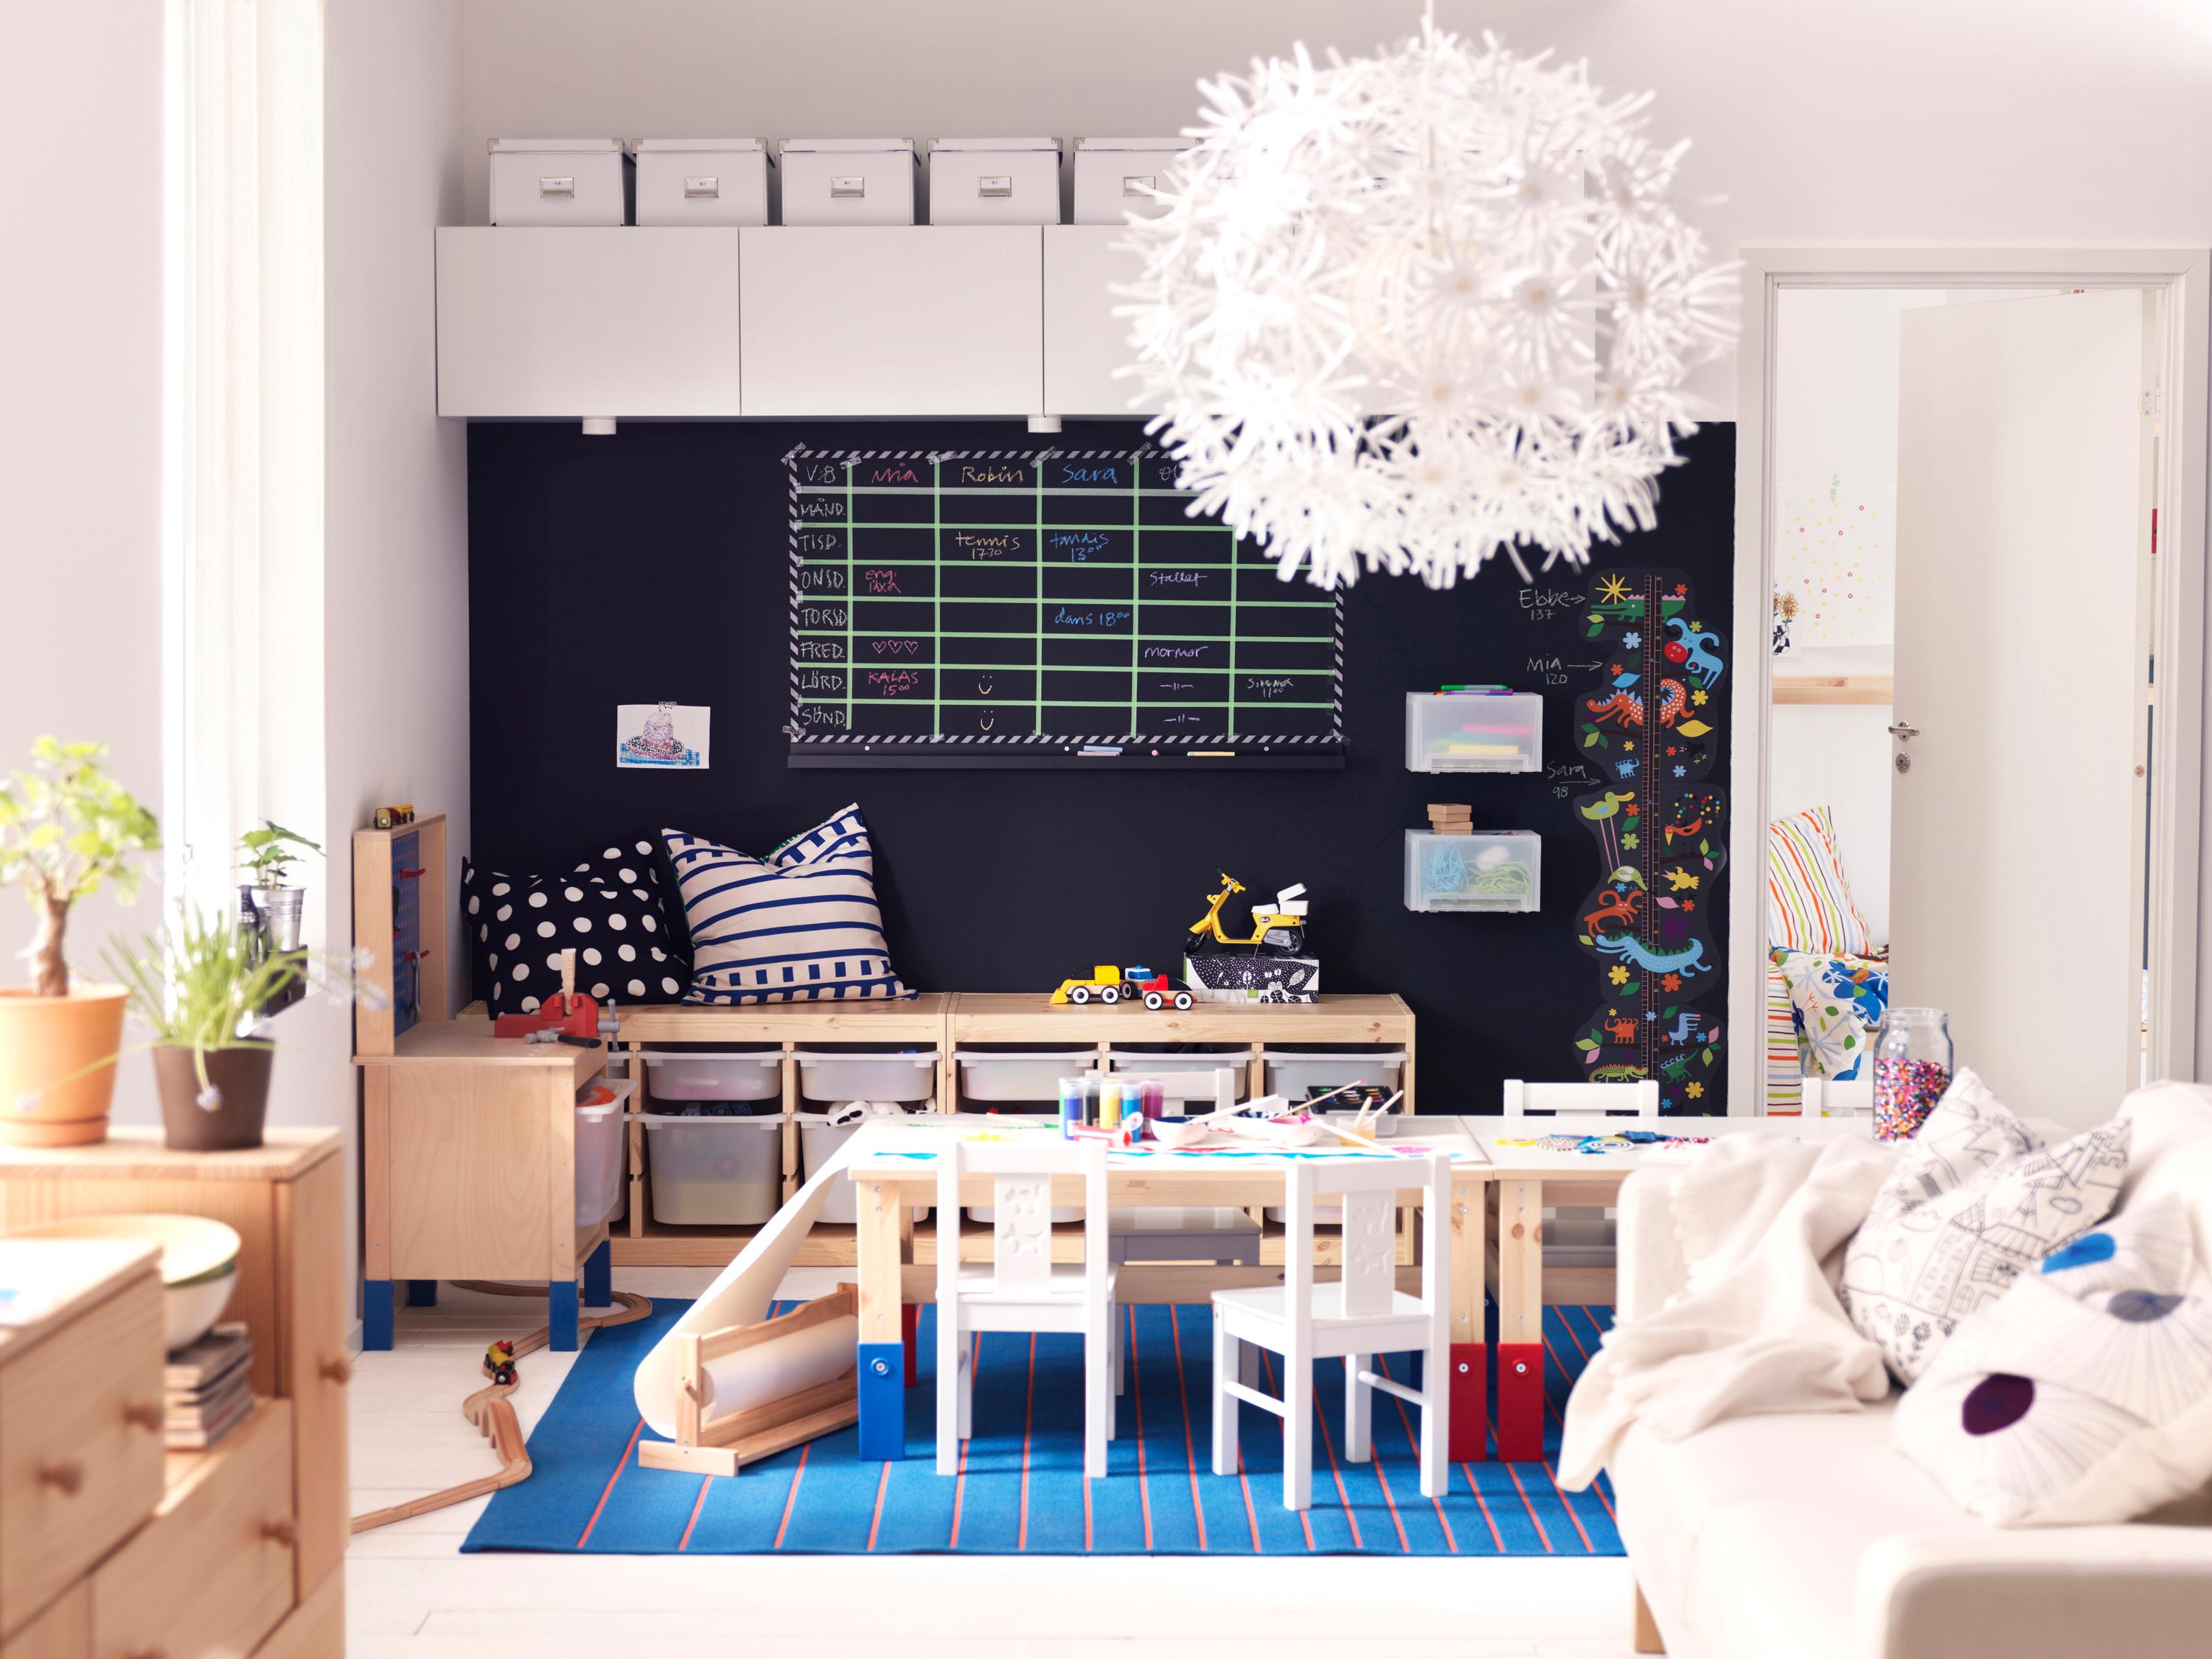 Wohnzimmer mit integriertem Kinderzimmer #kissen #ikea ©Inter IKEA Systems B.V.